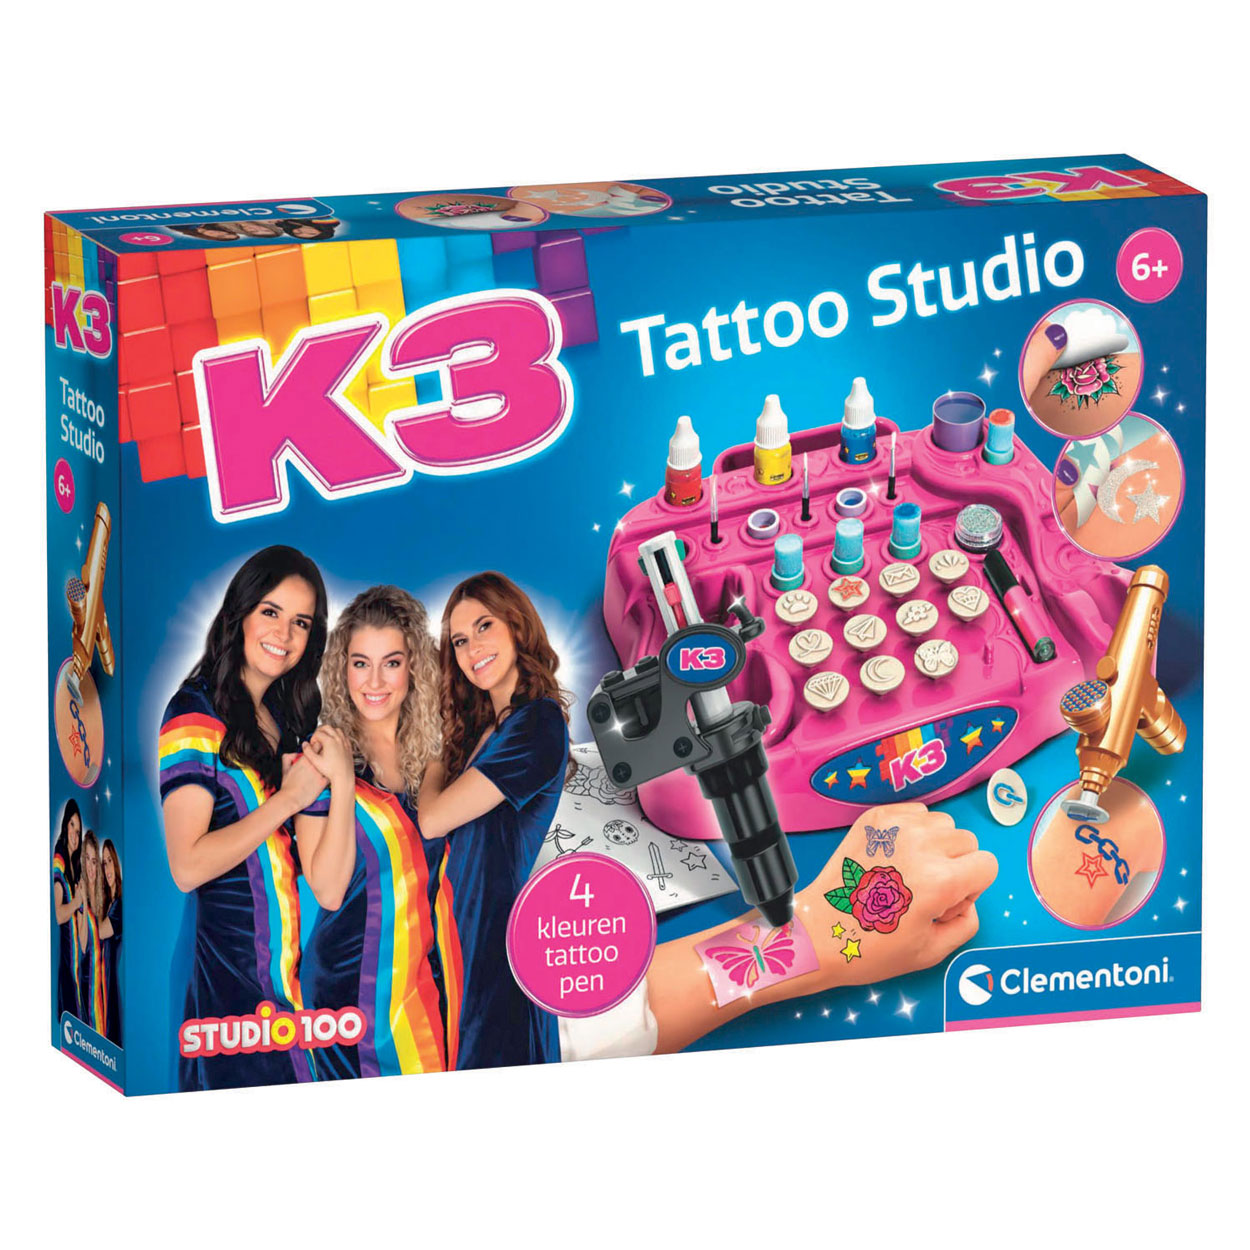 Studio de tatouage Clementoni K3